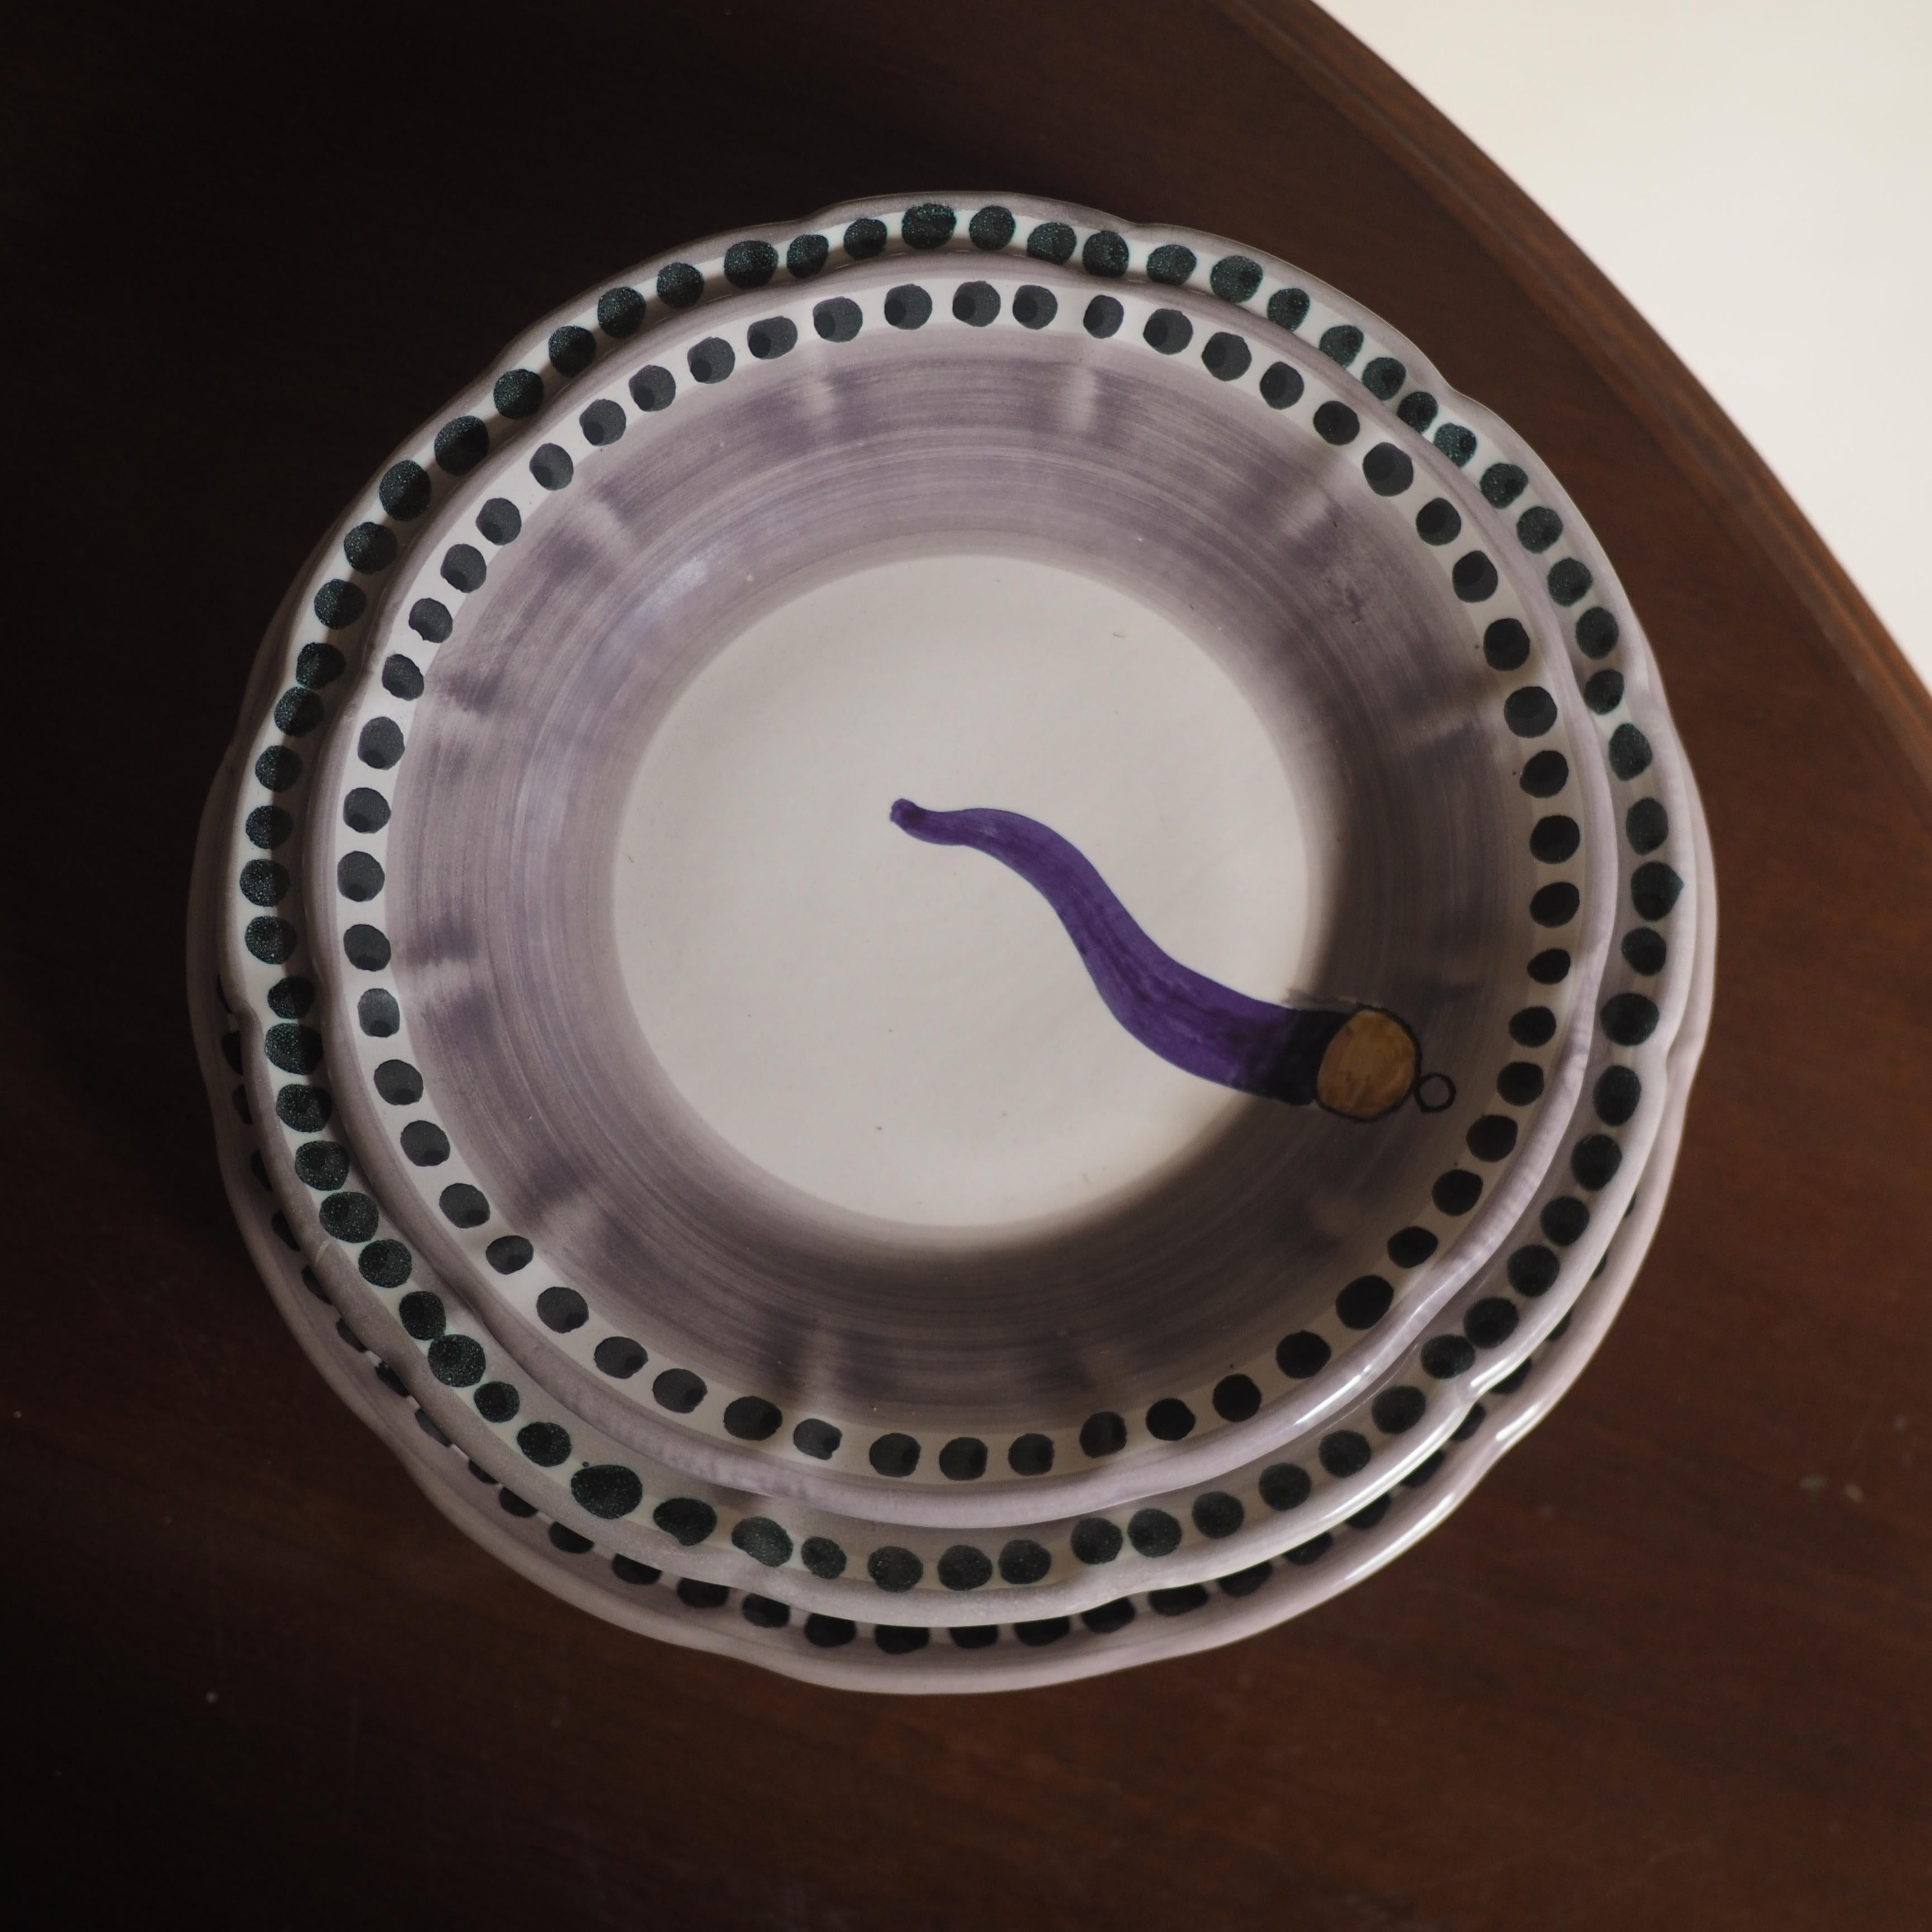 Collection Vietri, O'Curniciello, assiettes en céramique, créées à la suite d'un processus de production long et complexe. La première phase consiste à façonner l'argile sur la roue, à partir de laquelle la forme et la structure sont données. Suivi